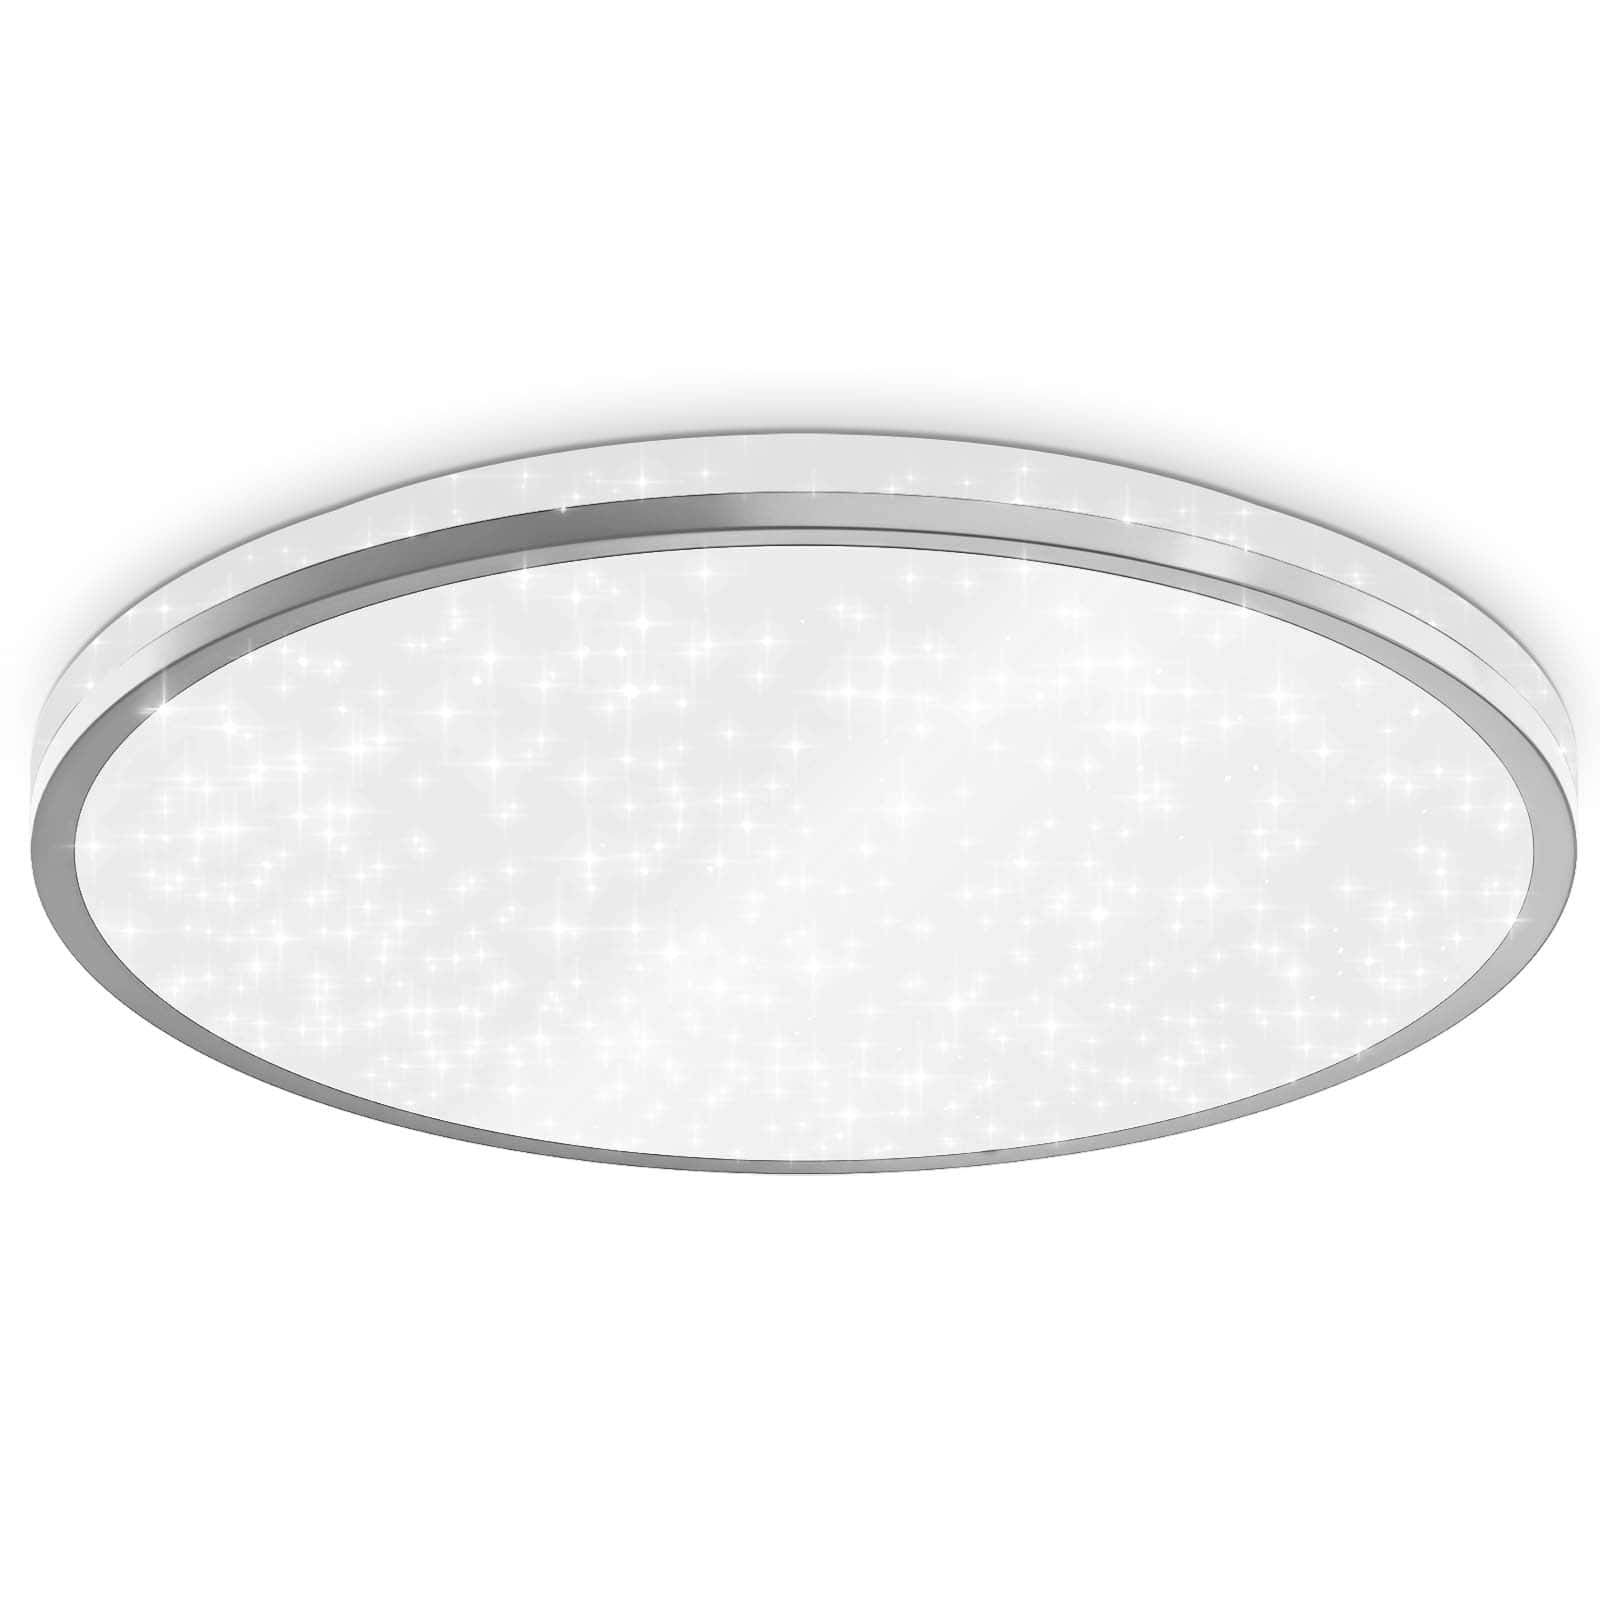 LED Deckenleuchte Sternenlicht weiß-silber mit Backlight-Effekt - 1